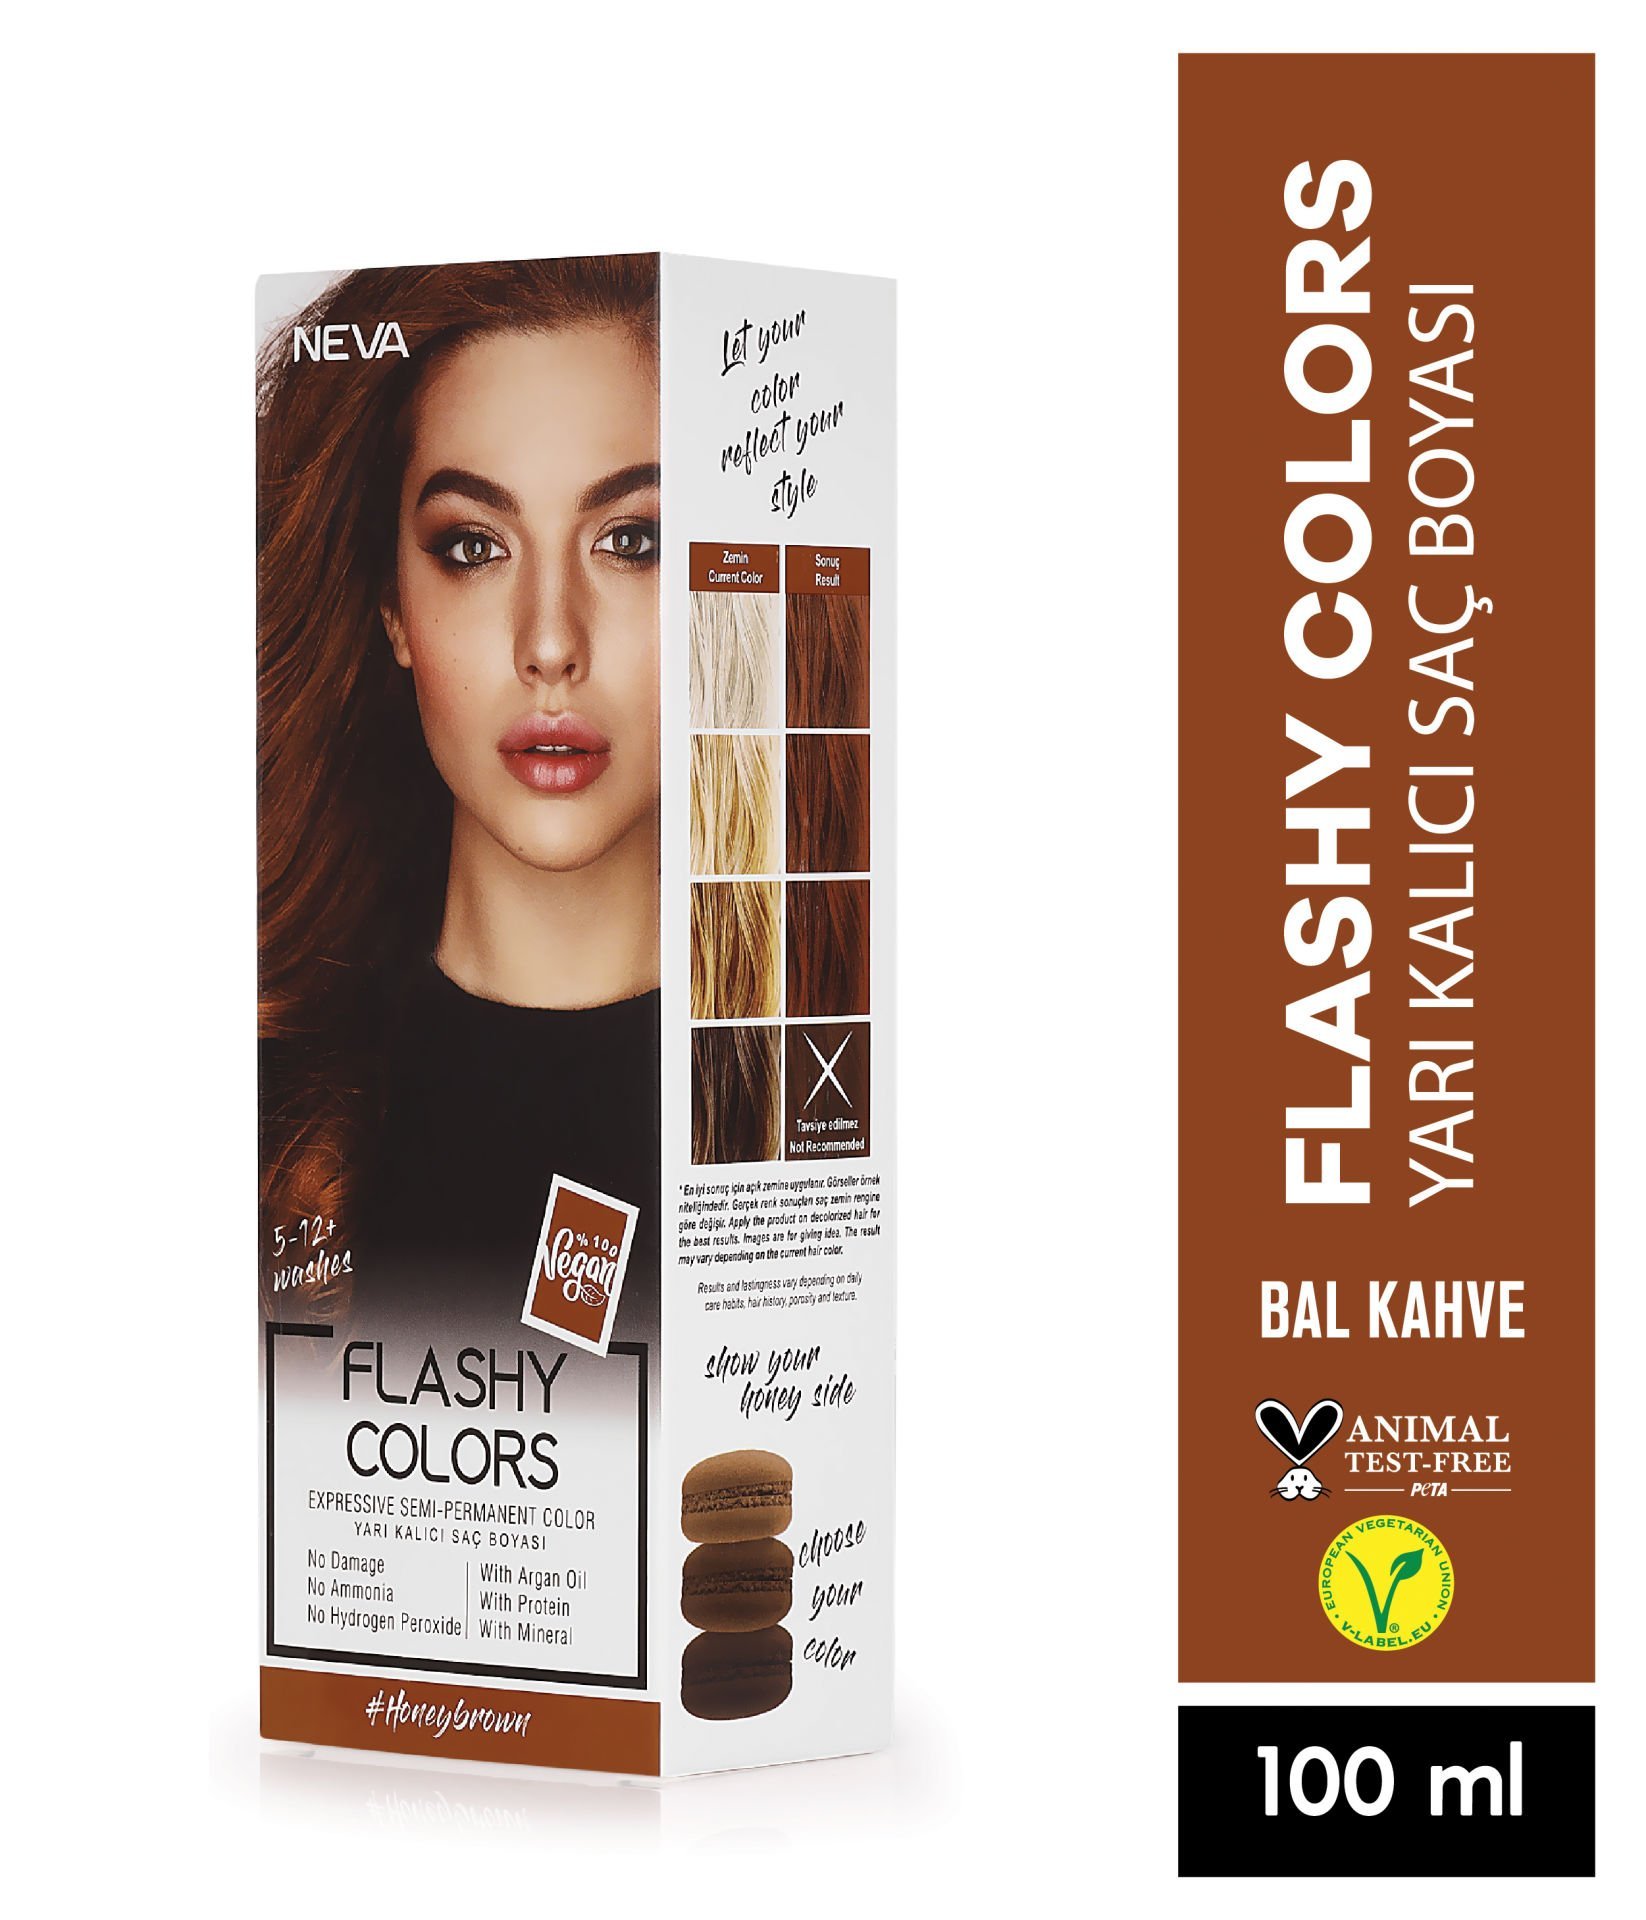 Flashy Colors Yarı Kalıcı Saç Boyası - Bal Kahve 100 ml